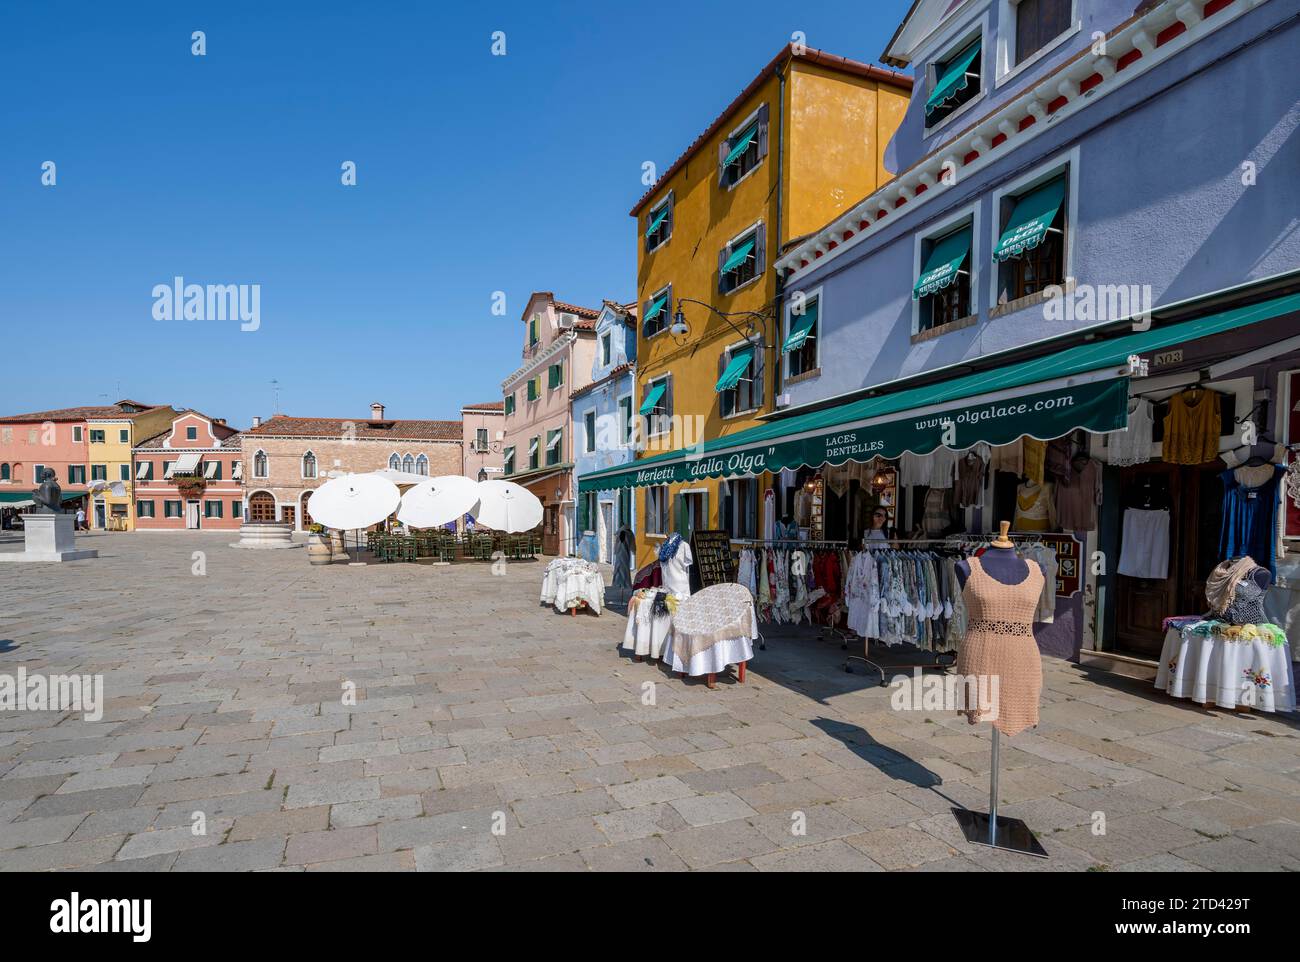 Clothes shop on the main square, Piazza Baldassare Galuppi, Burano Island, Venice, Veneto, Italy Stock Photo